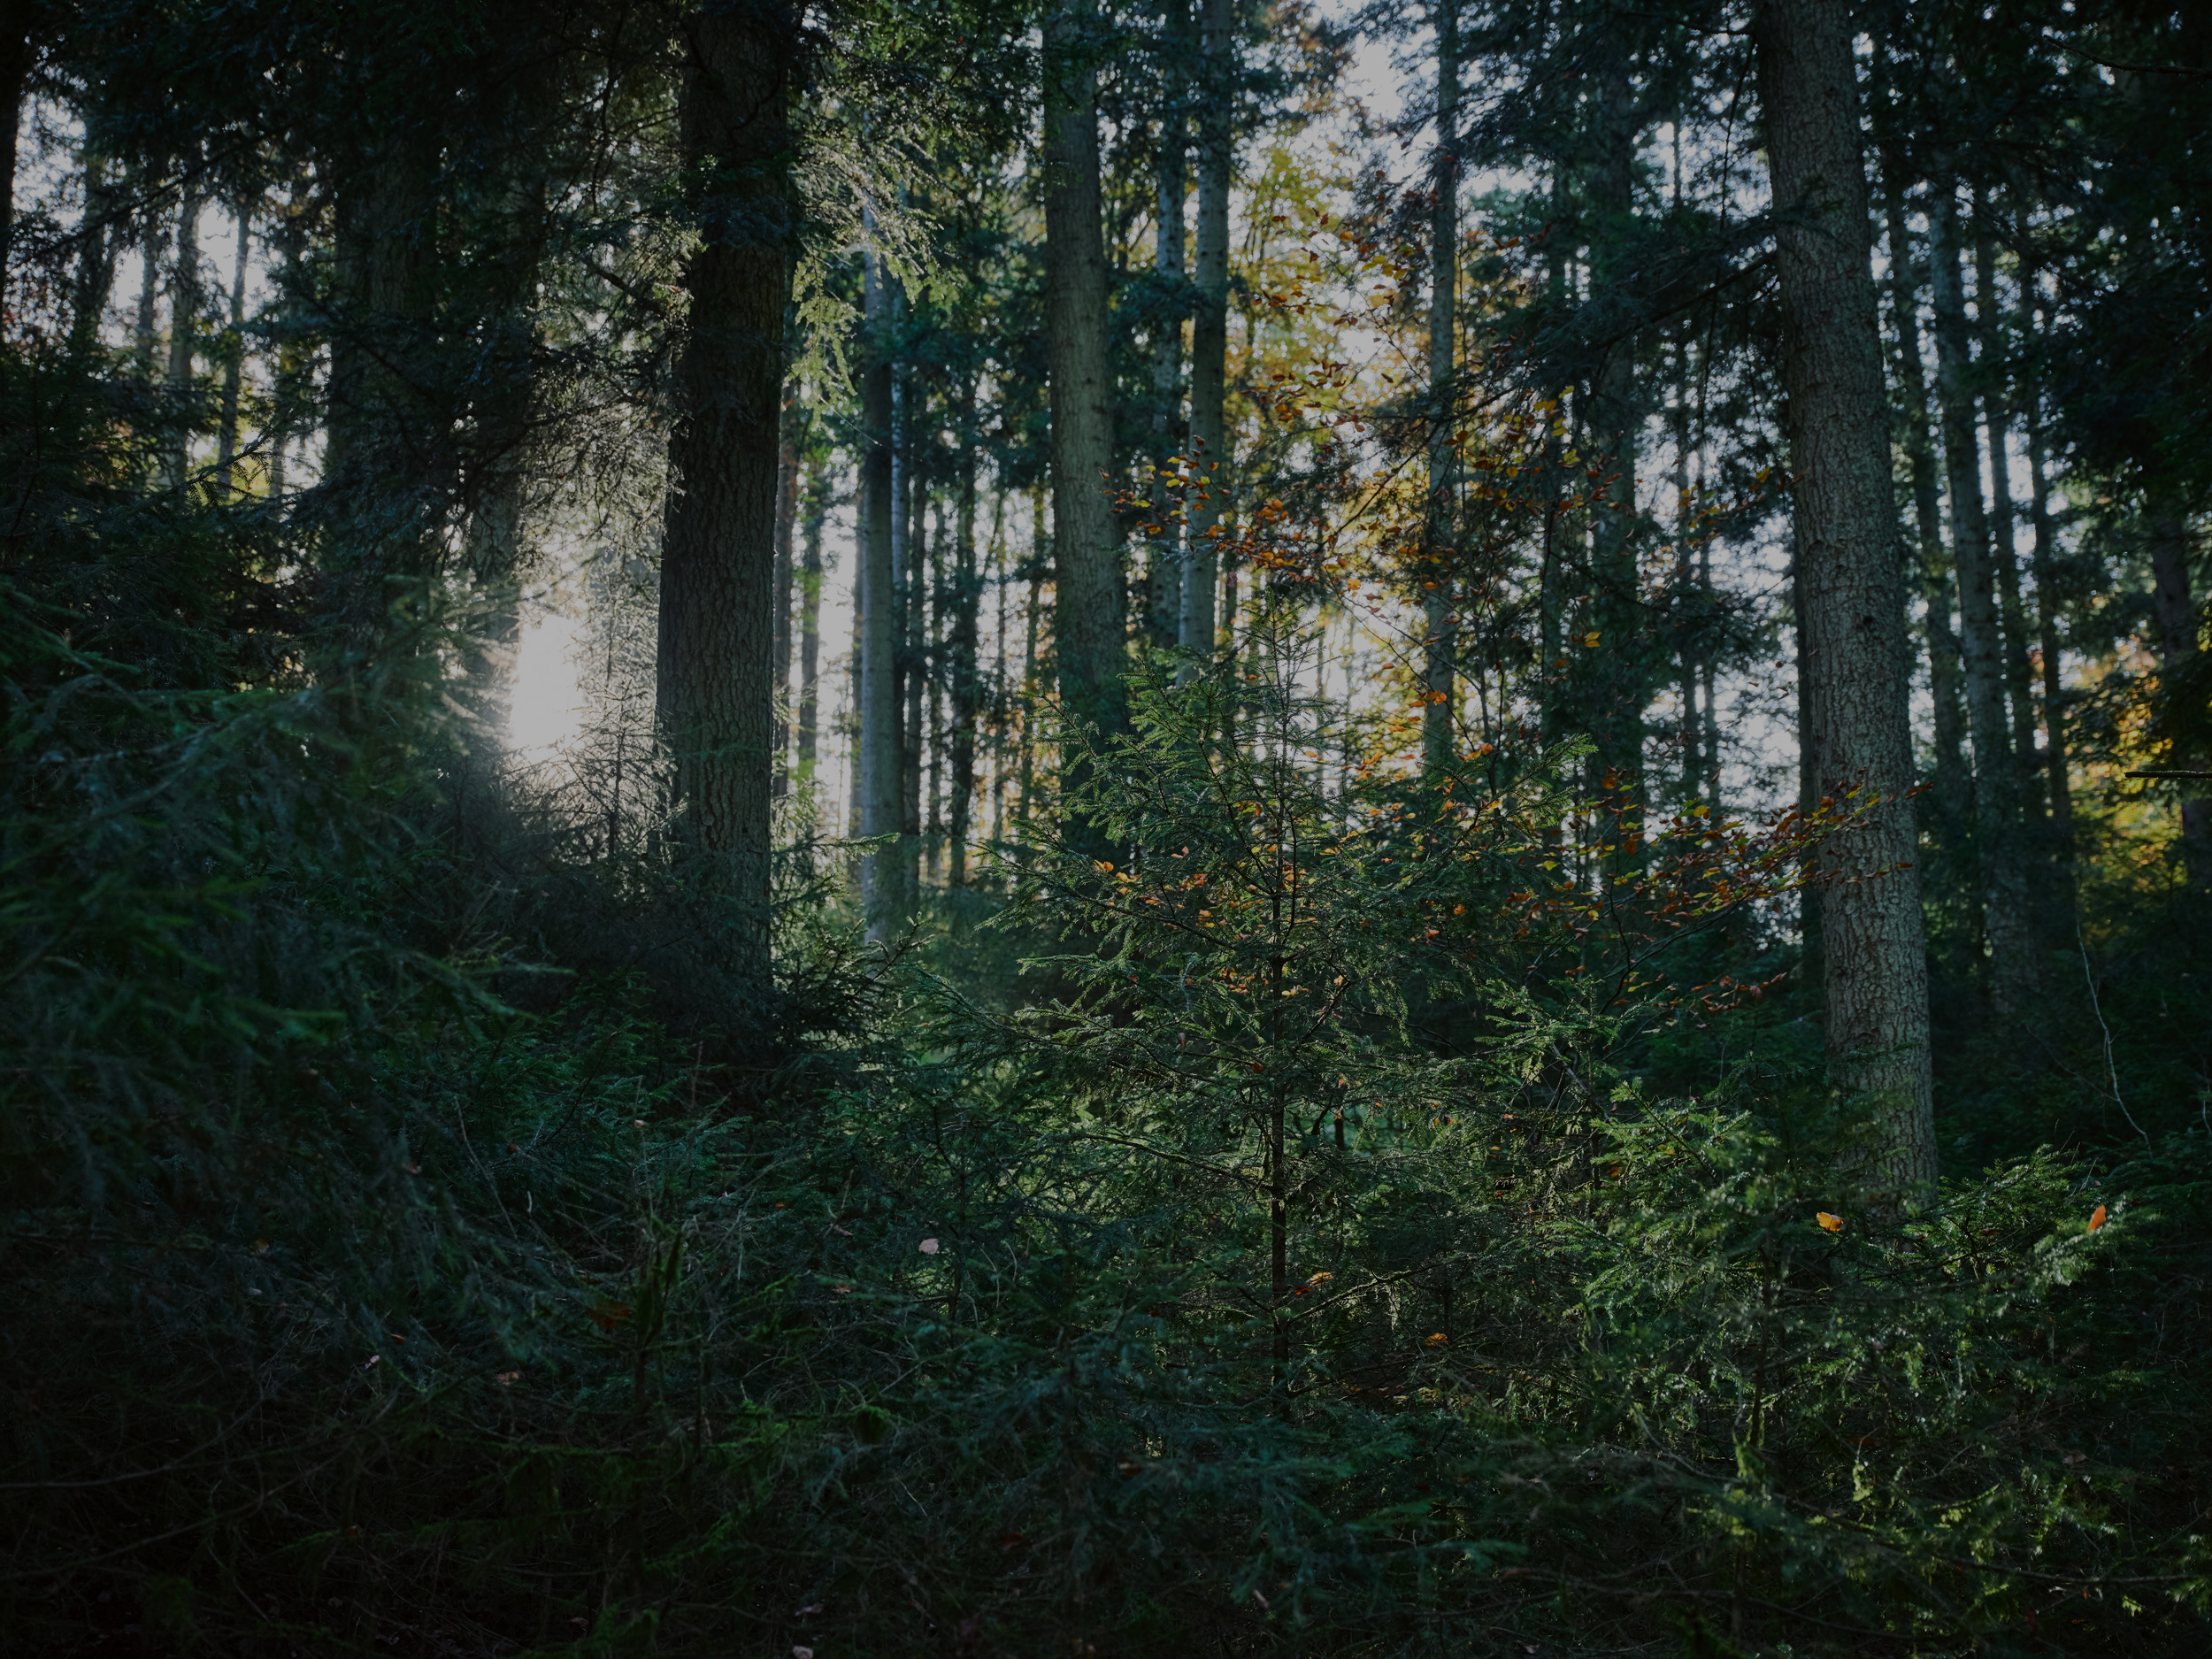 Zonlicht valt door dichte bomen in een bos